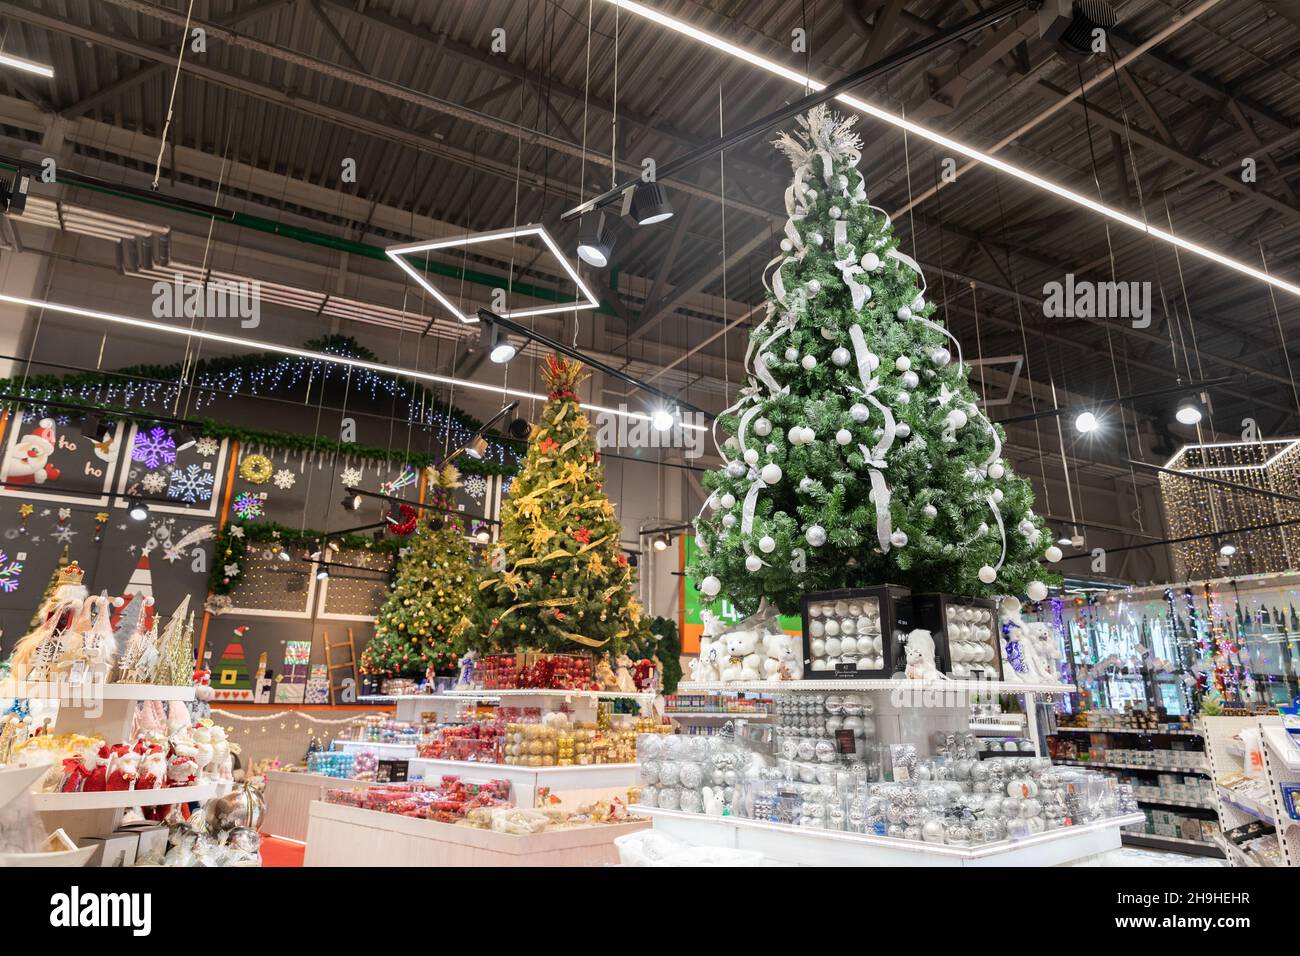 Minsk, Bélarus - 29 novembre 2021 : exposition du nouvel an dans le magasin avec des arbres et des décorations pour l'arbre de Noël Banque D'Images